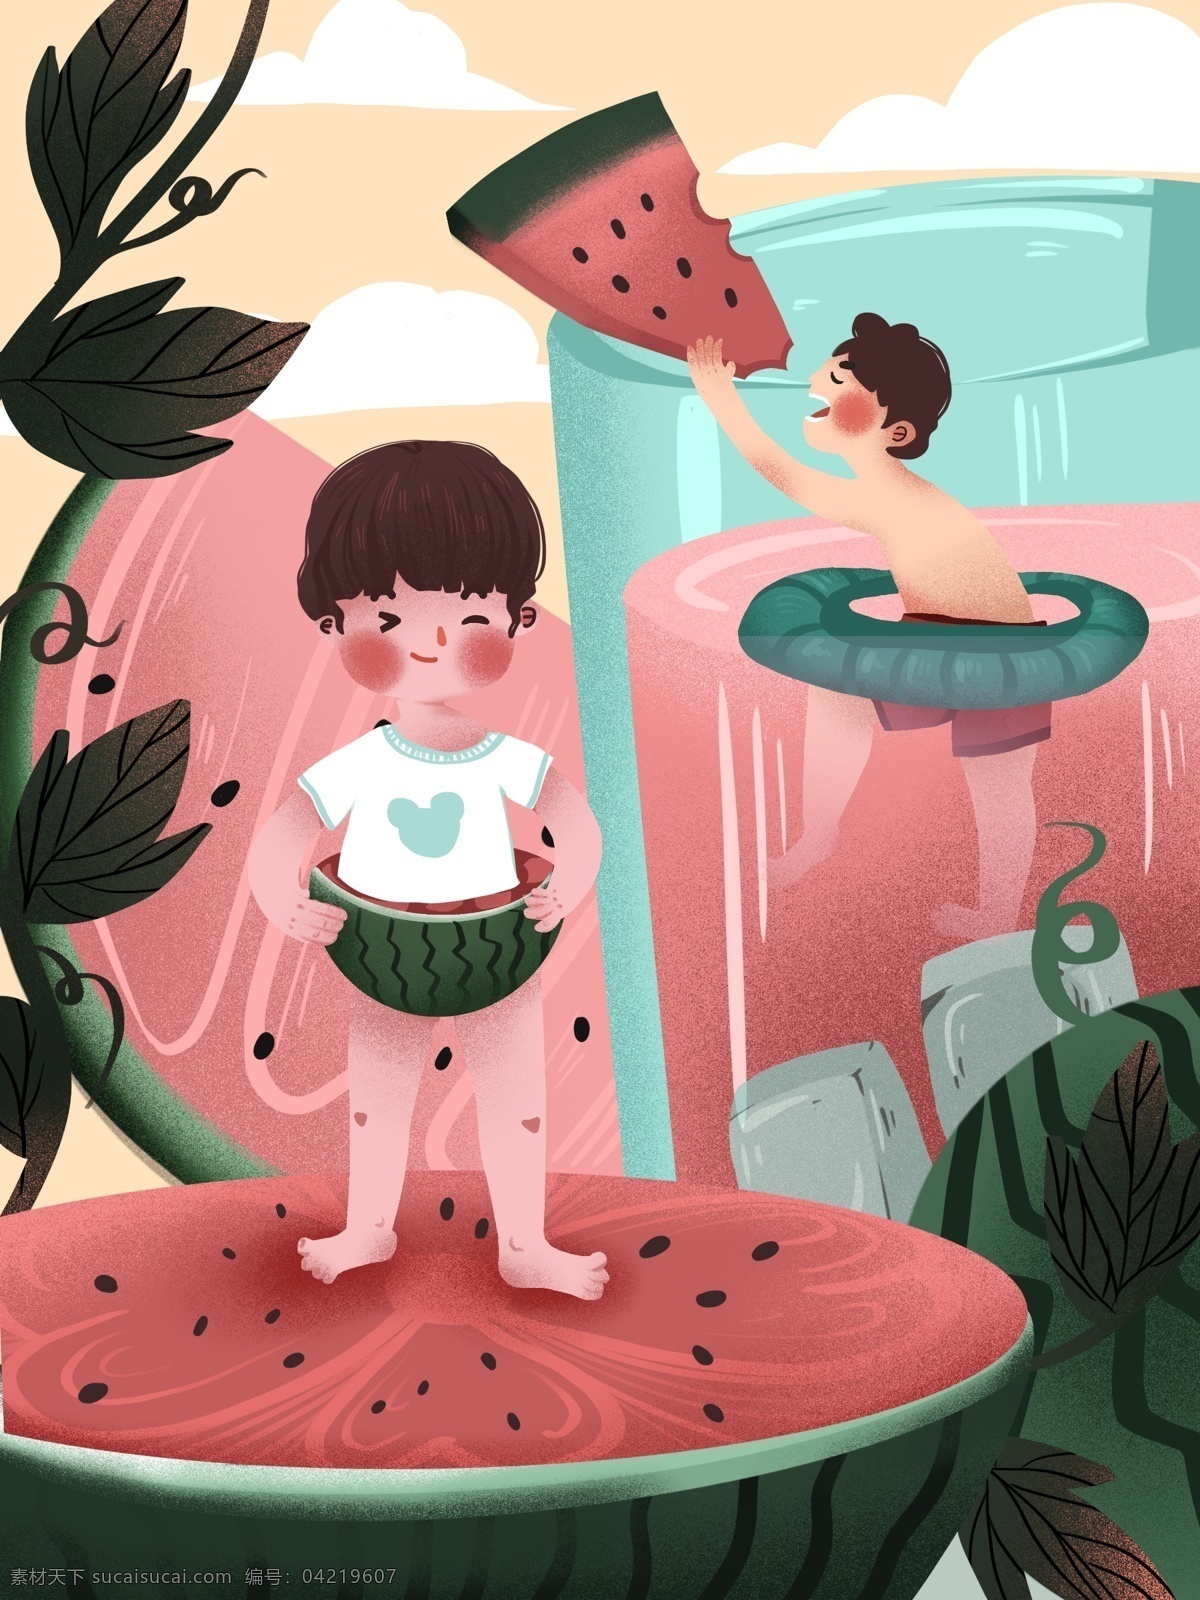 创意 水果 插画 西瓜 男孩 可爱 温馨 场景 游泳 冰块 果汁 创意水果插画 西瓜汁 萌